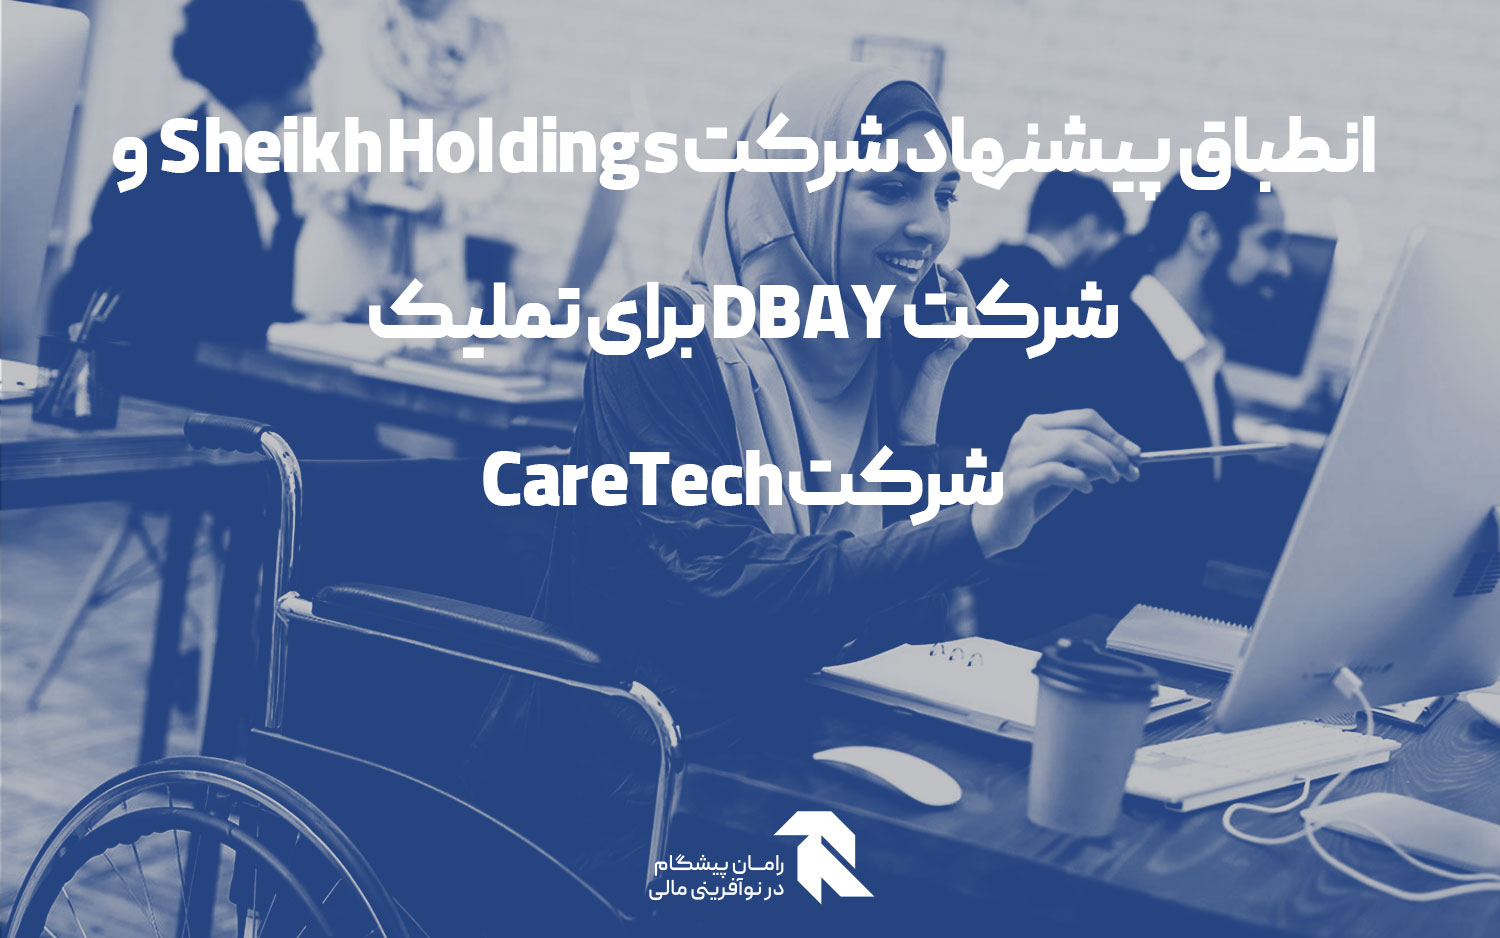 انطباق پیشنهاد شرکت Sheikh Holdings و شرکت DBAY برای تملیک شرکت CareTech